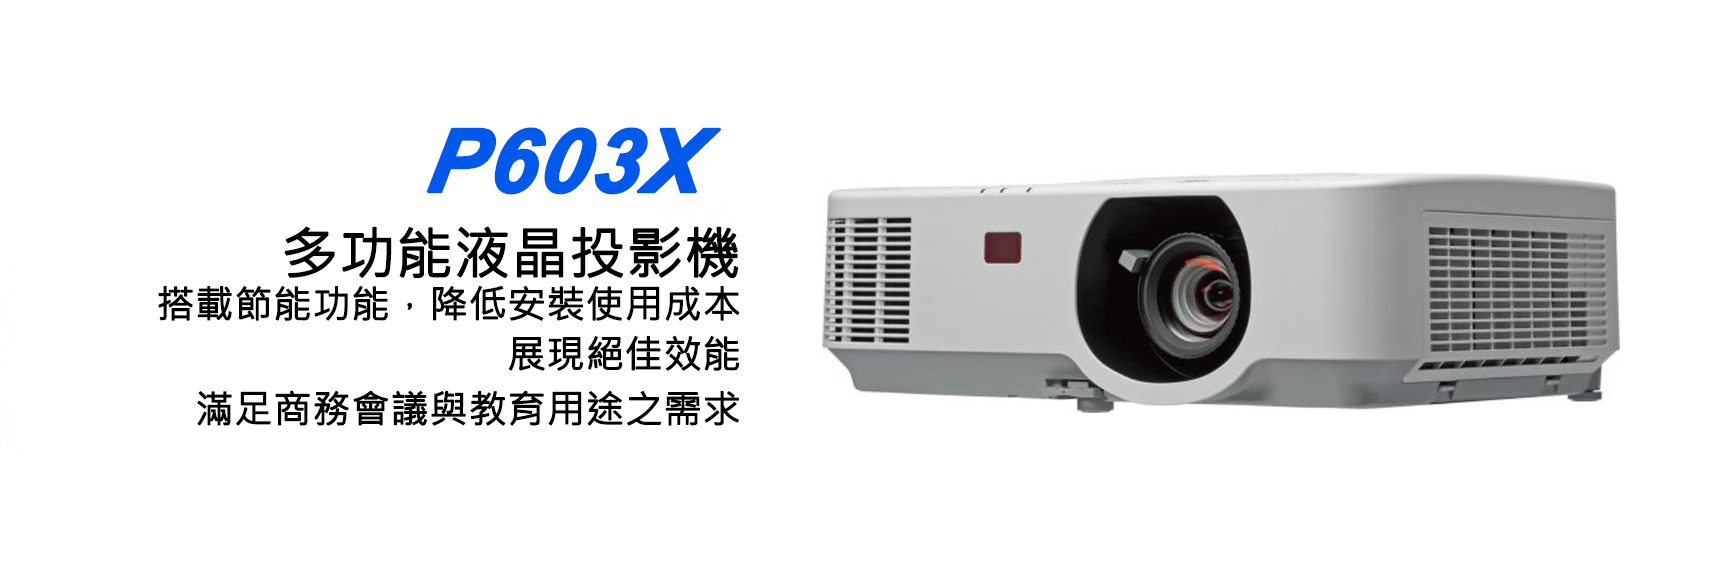 NEC P603X 多功能液晶投影機 1